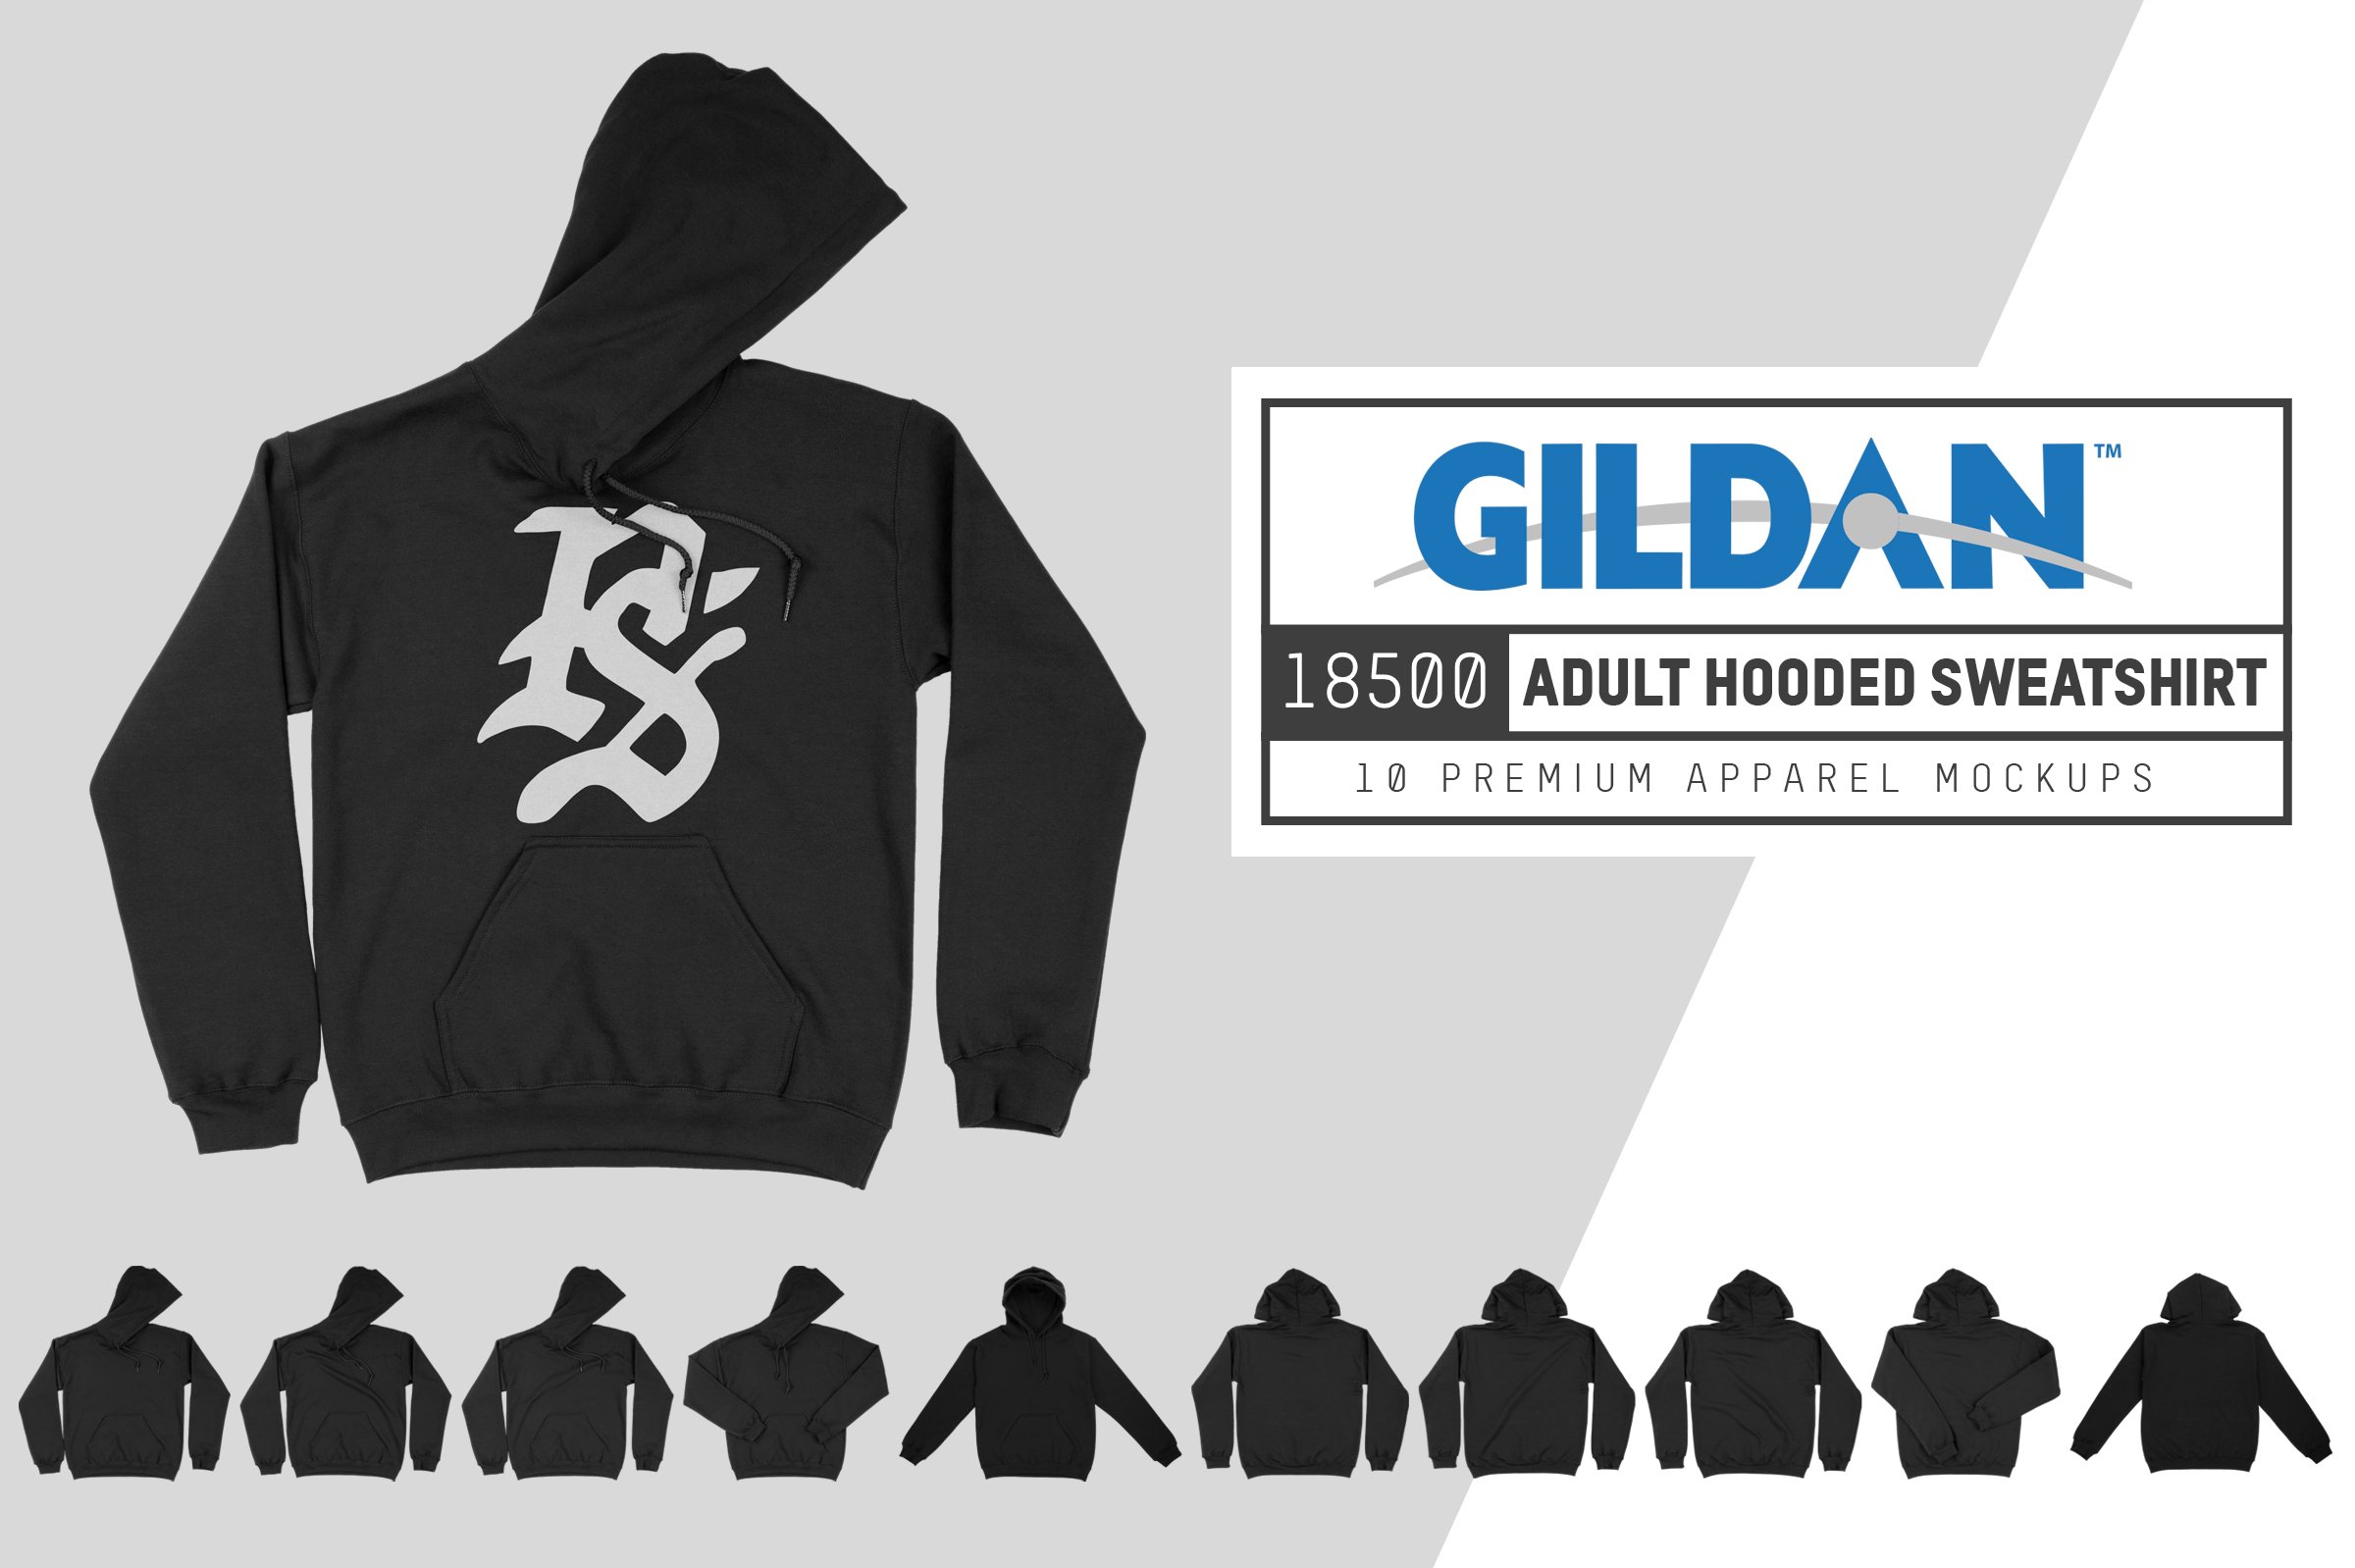 Gildan 18500 Hooded Sweatshirt cover image.